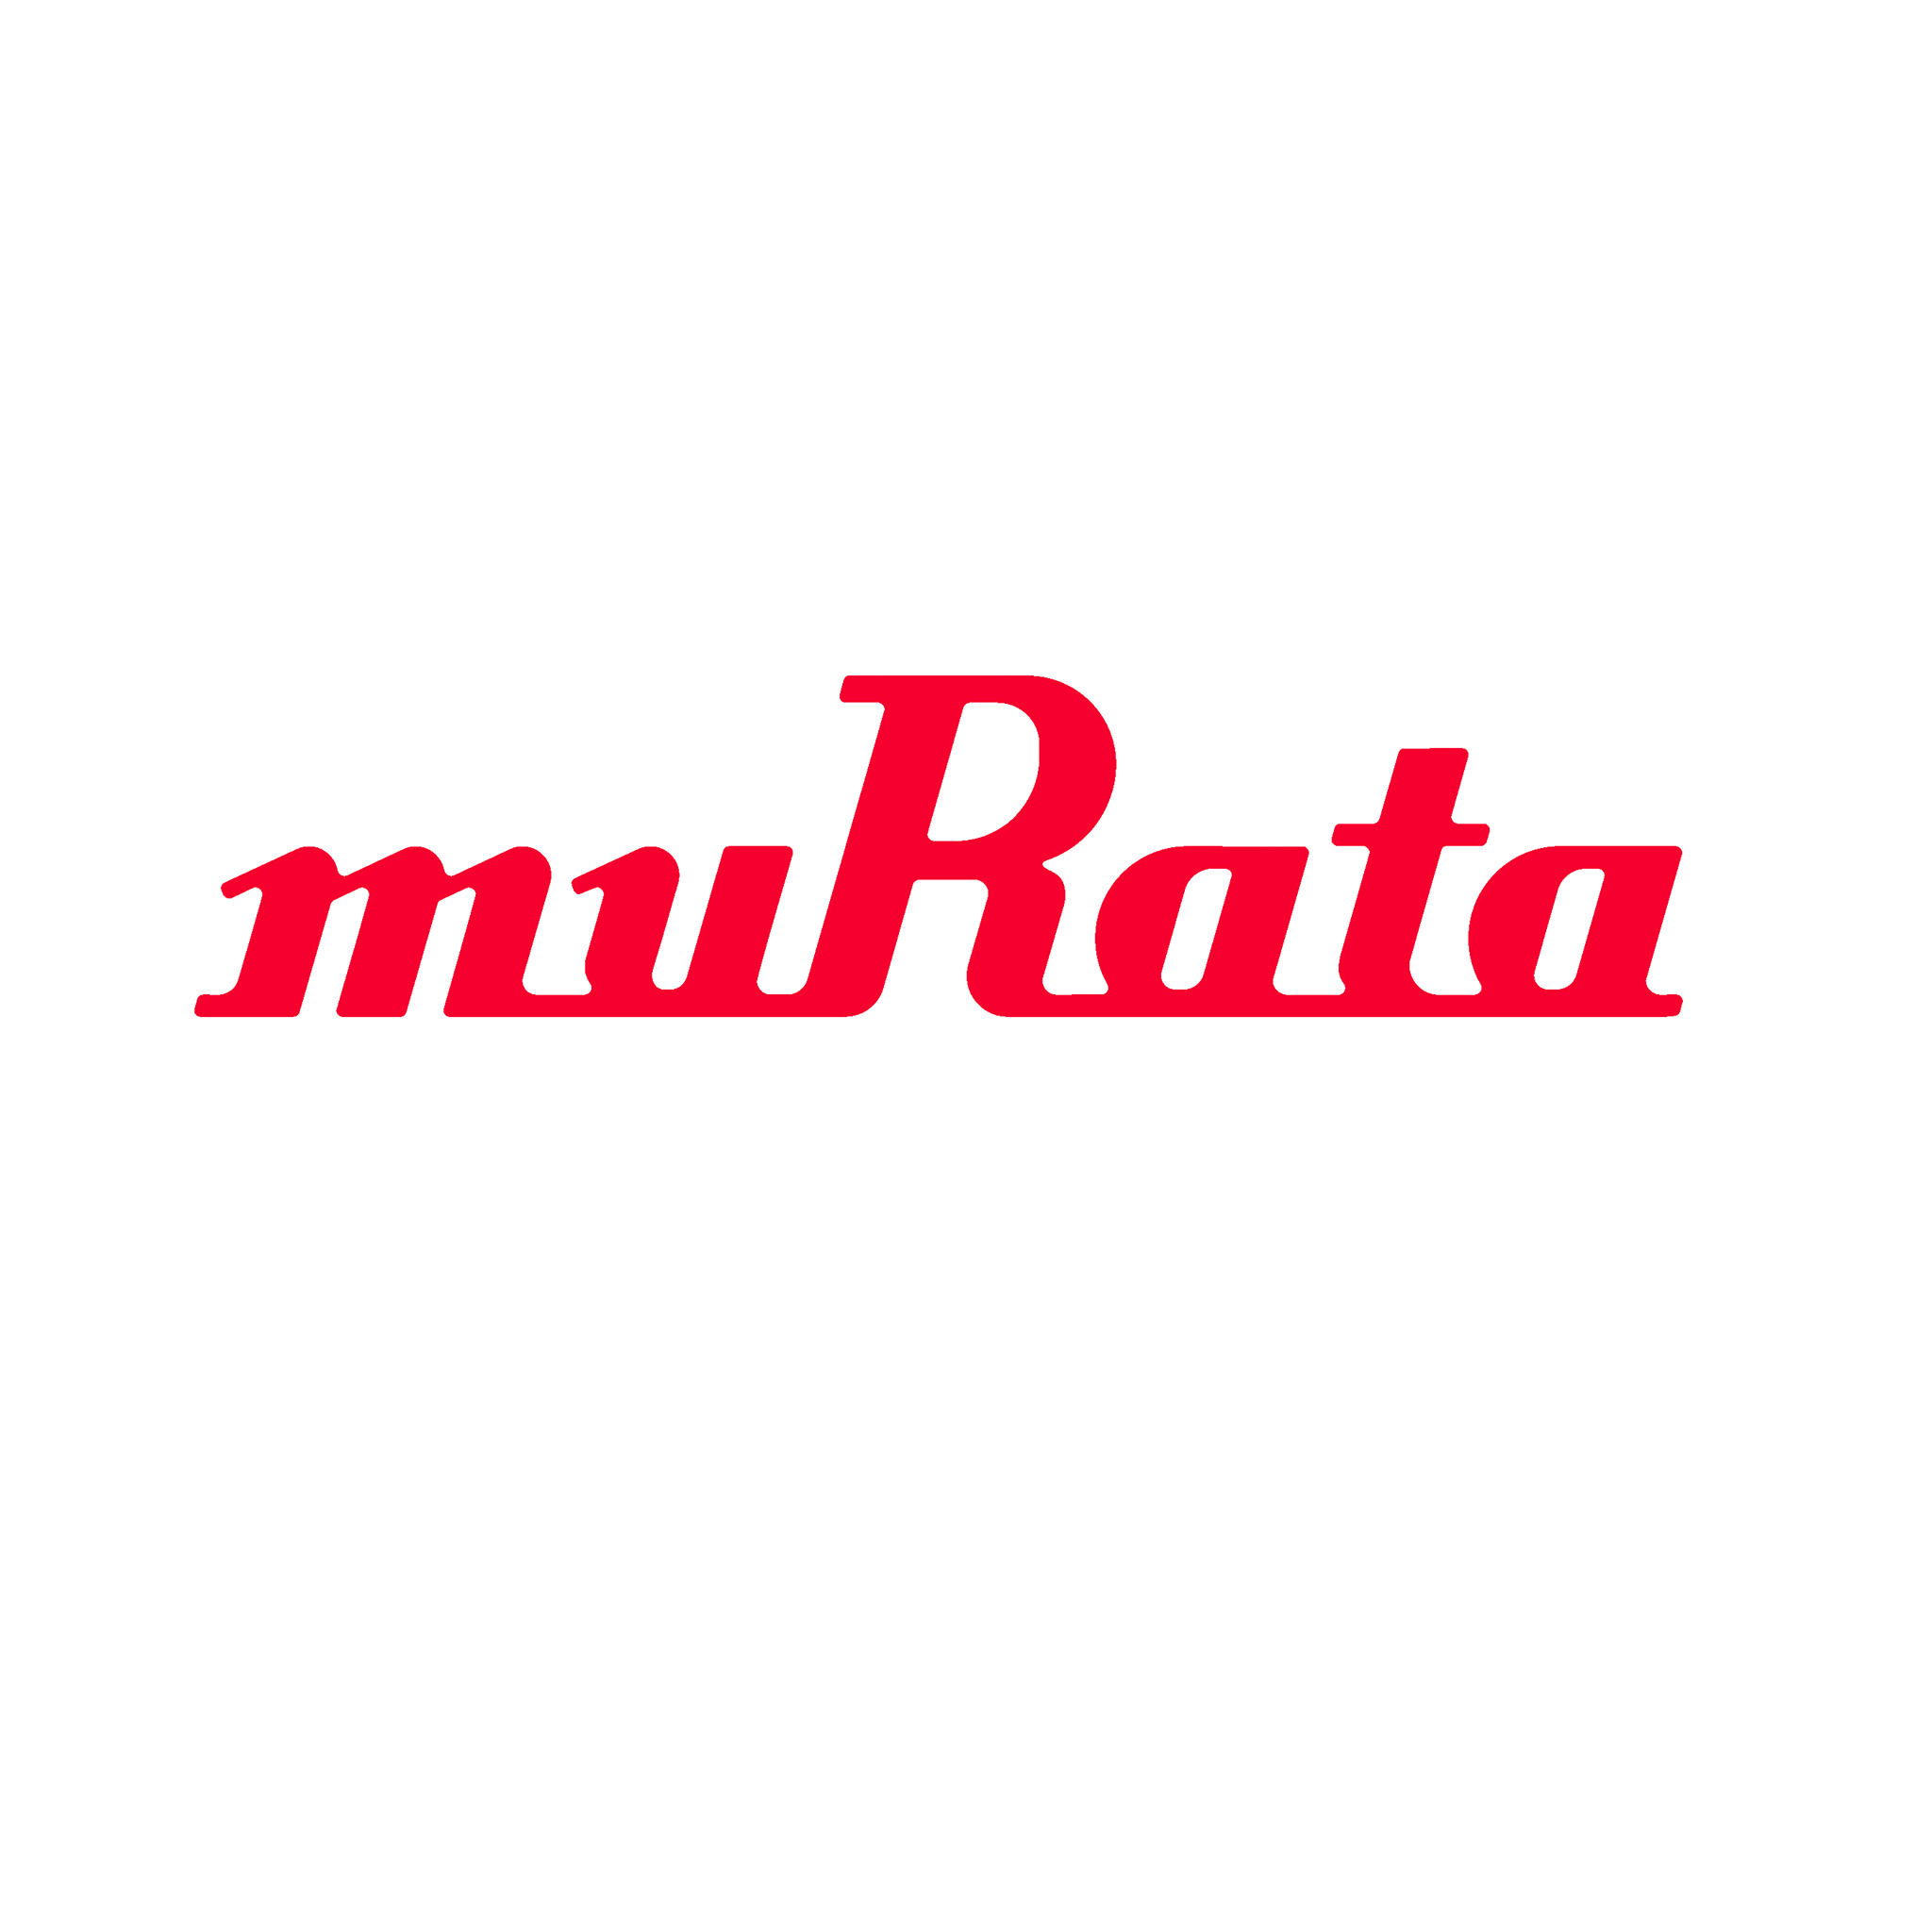 Murata Manufacturing Co., Ltd